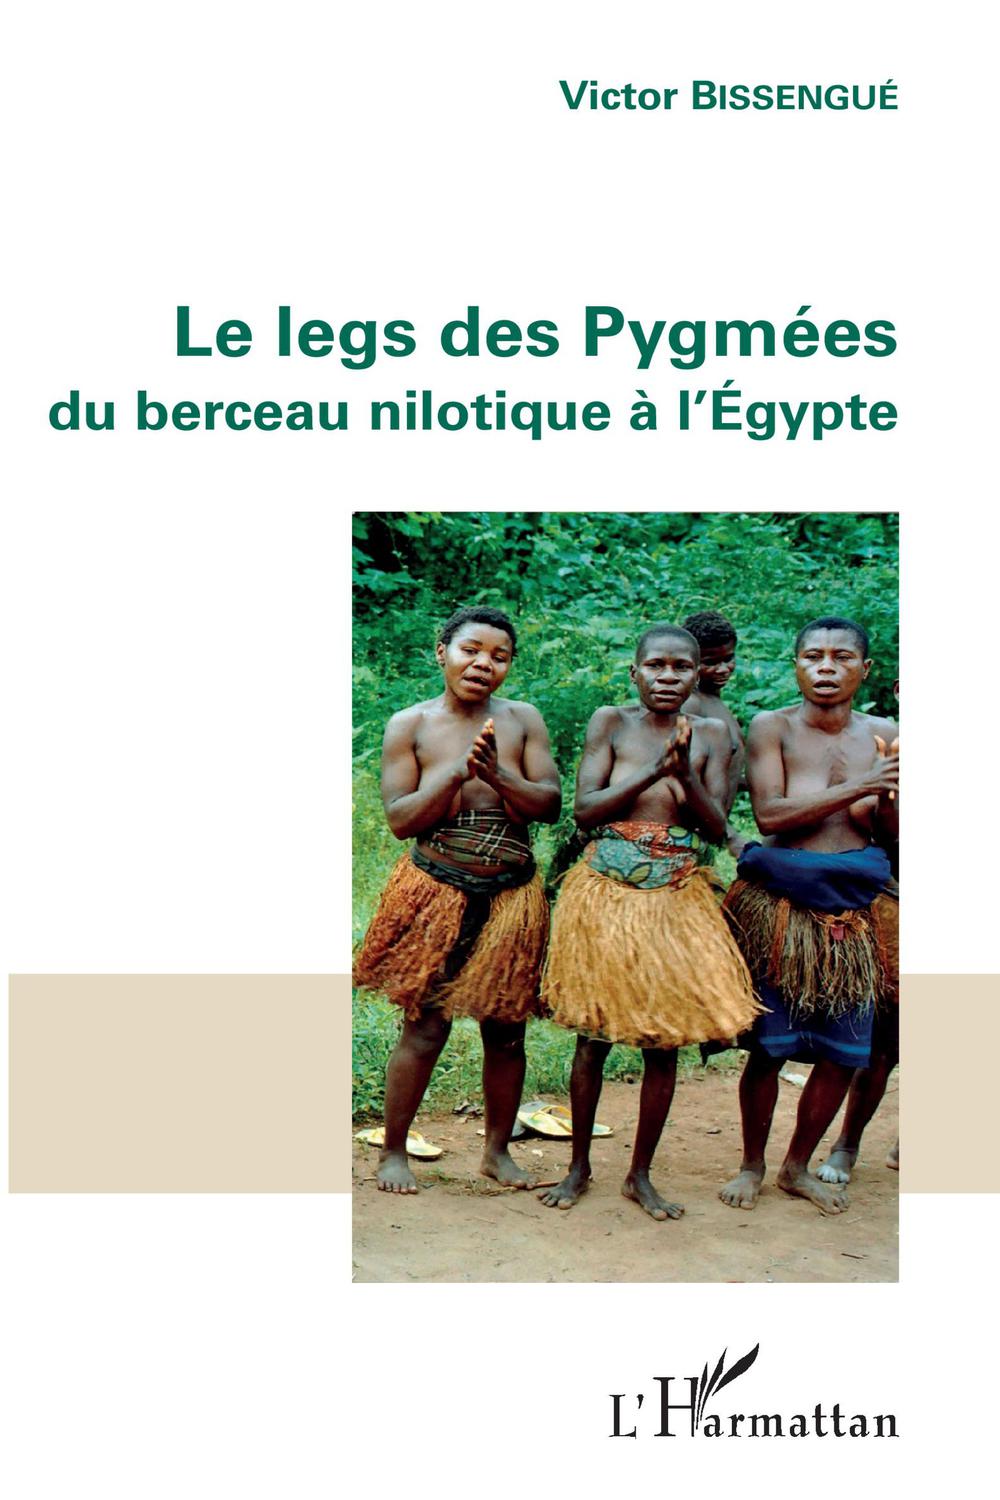 Le legs des Pygmées - Victor Bissengue